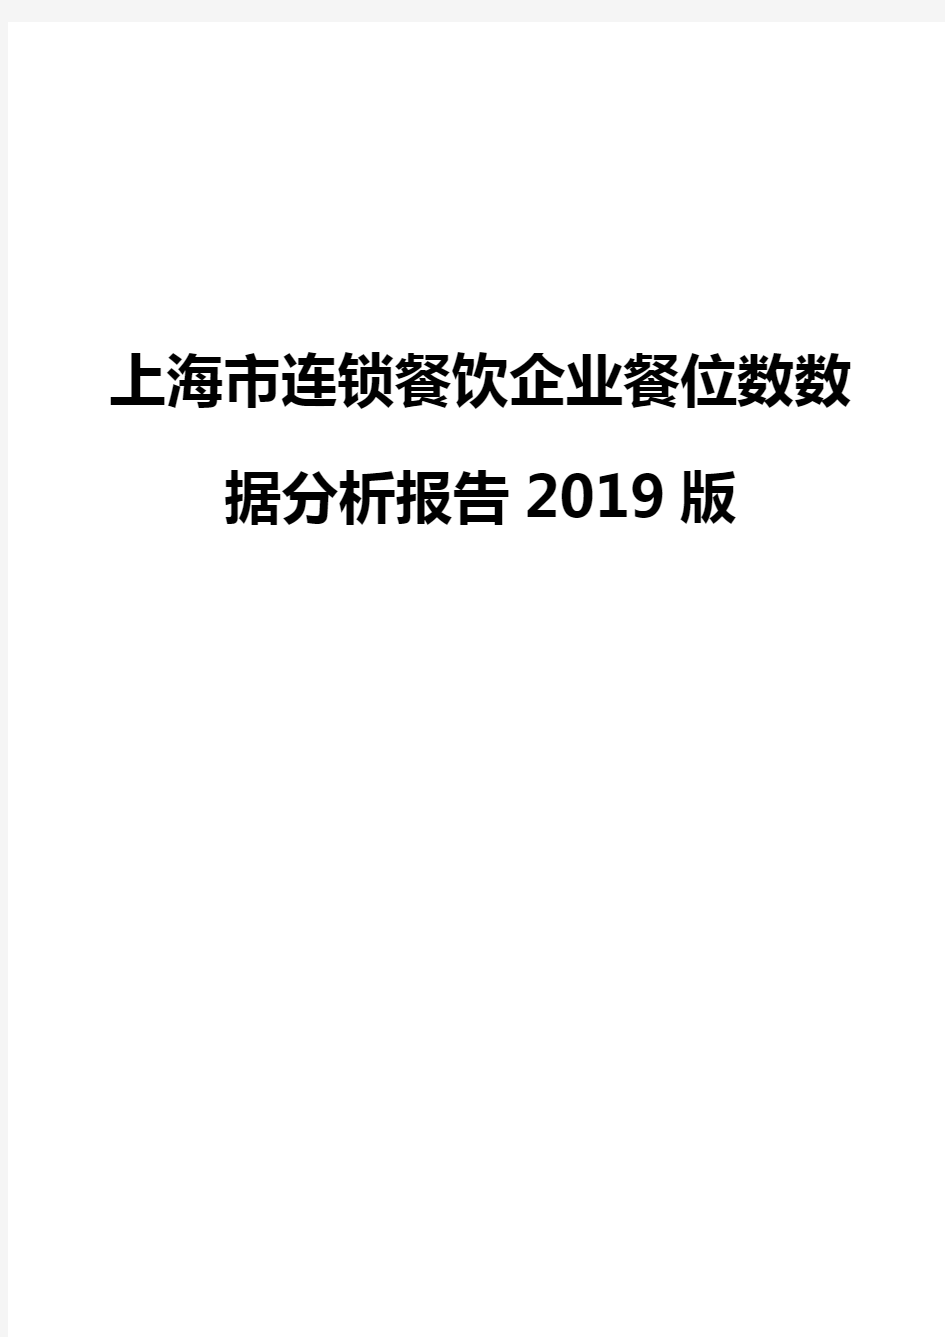 上海市连锁餐饮企业餐位数数据分析报告2019版